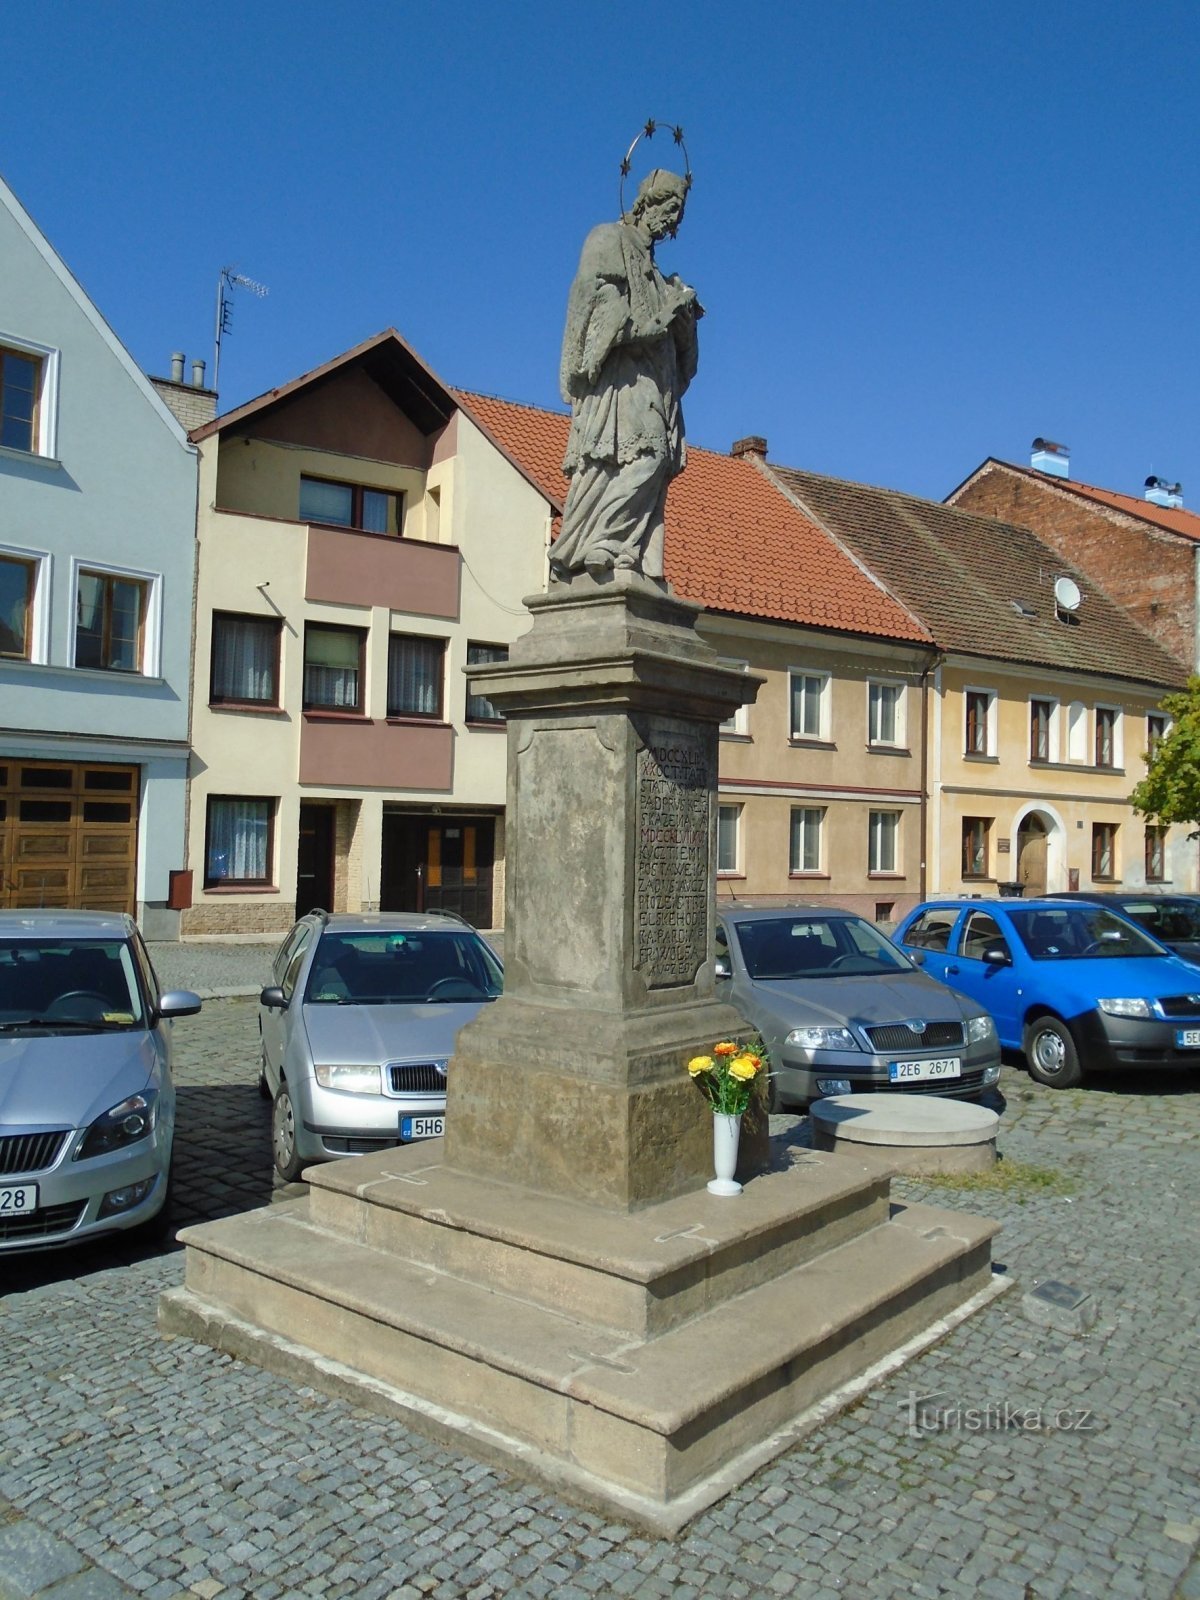 Άγαλμα του Αγ. John of Nepomuck on Bělobranské náměstí (Pardubice, 18.4.2018 Απριλίου XNUMX)